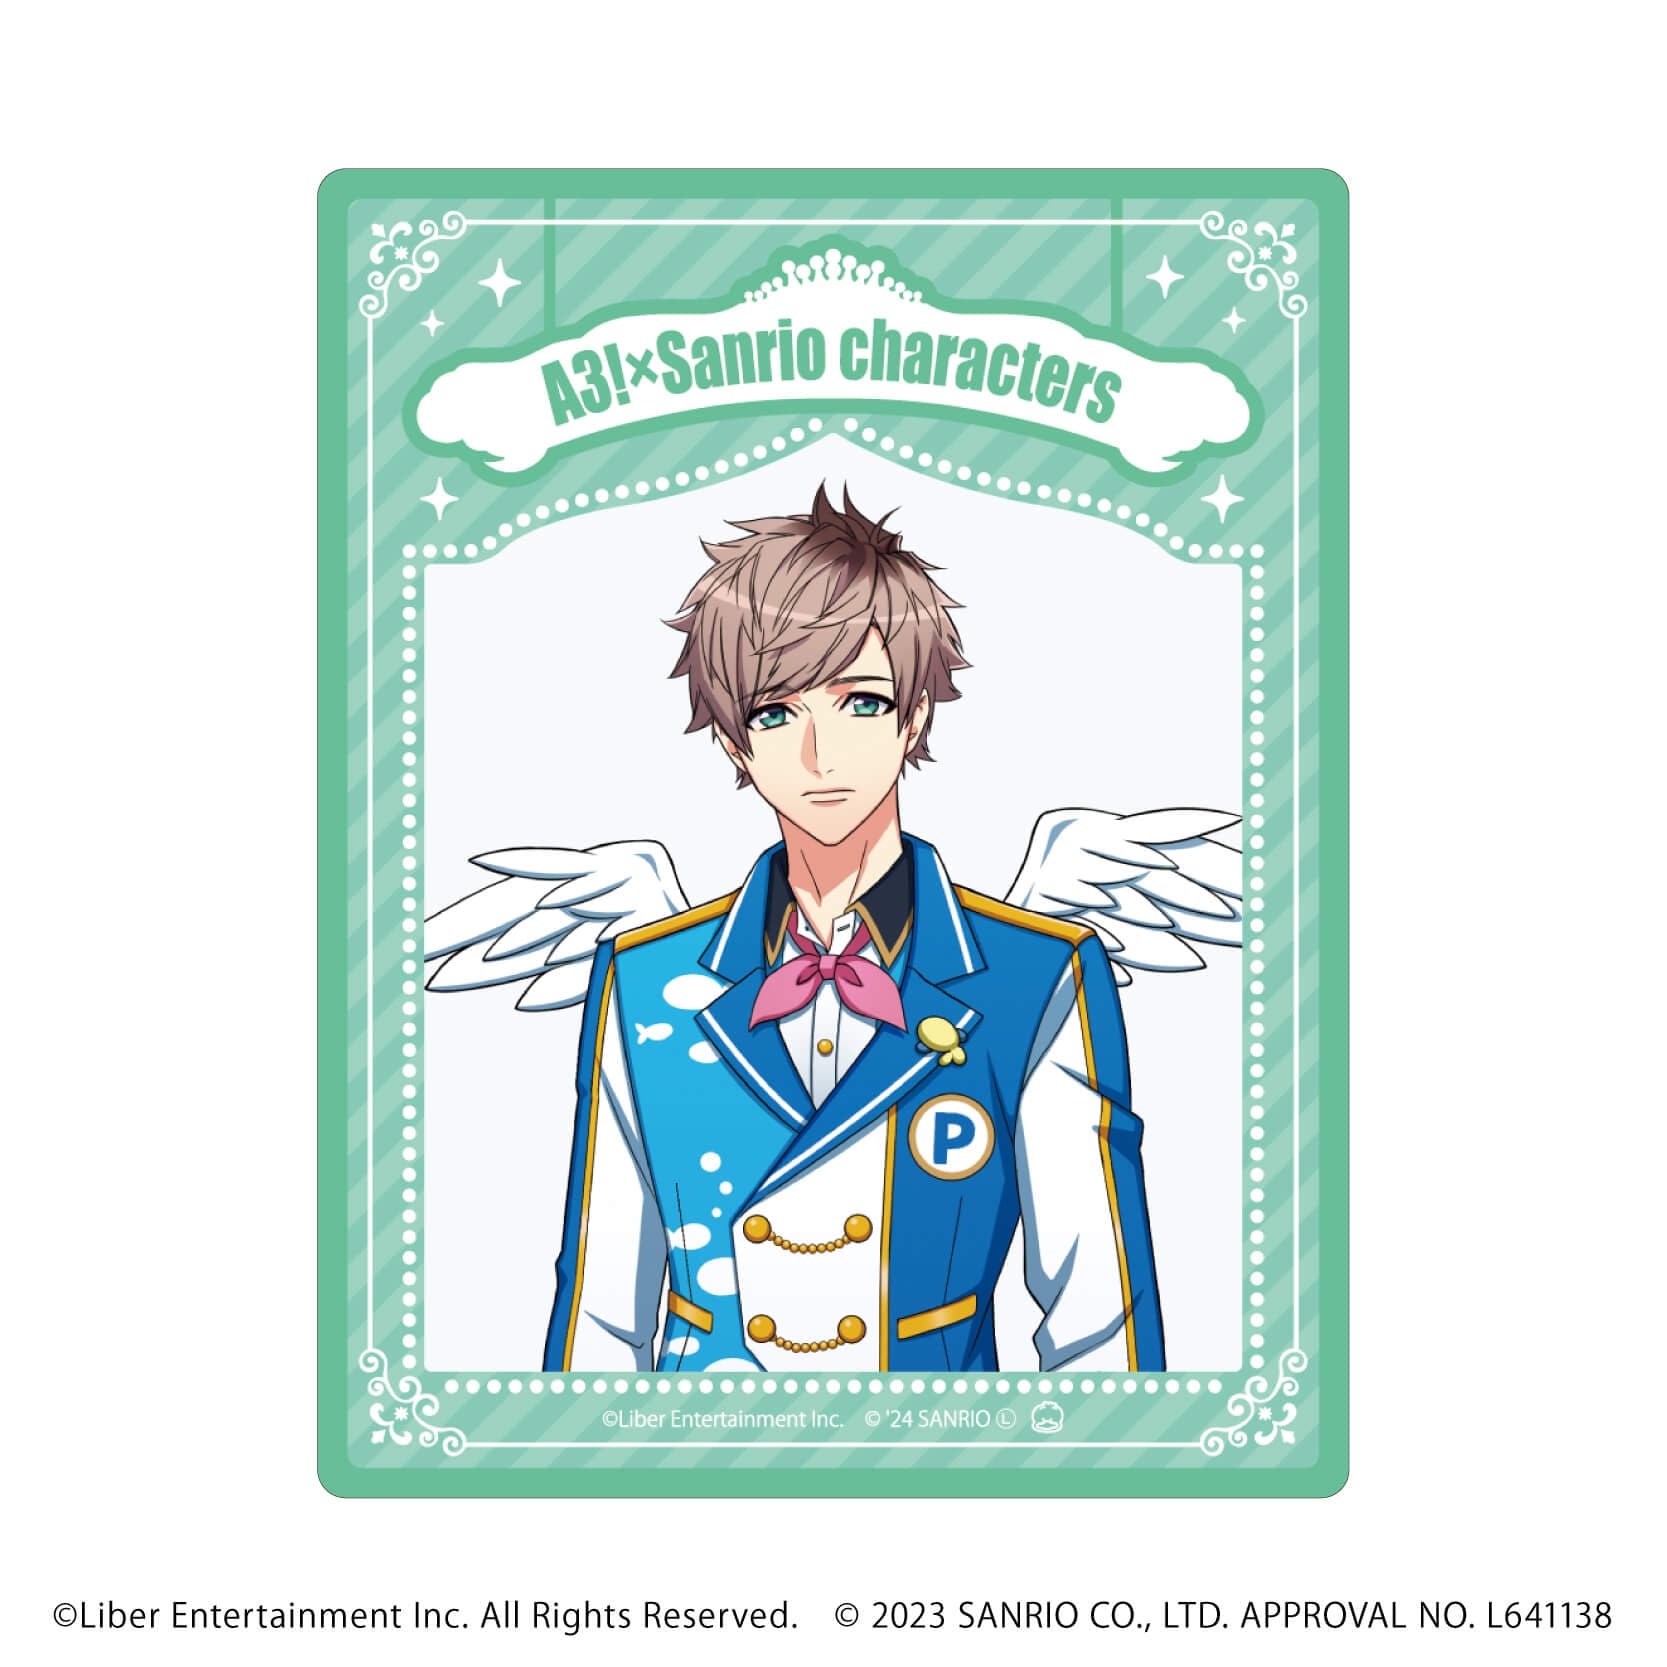 アクリルカード「A3!×Sanrio characters」07/S＆S コンプリートBOX(全12種)(公式イラスト)